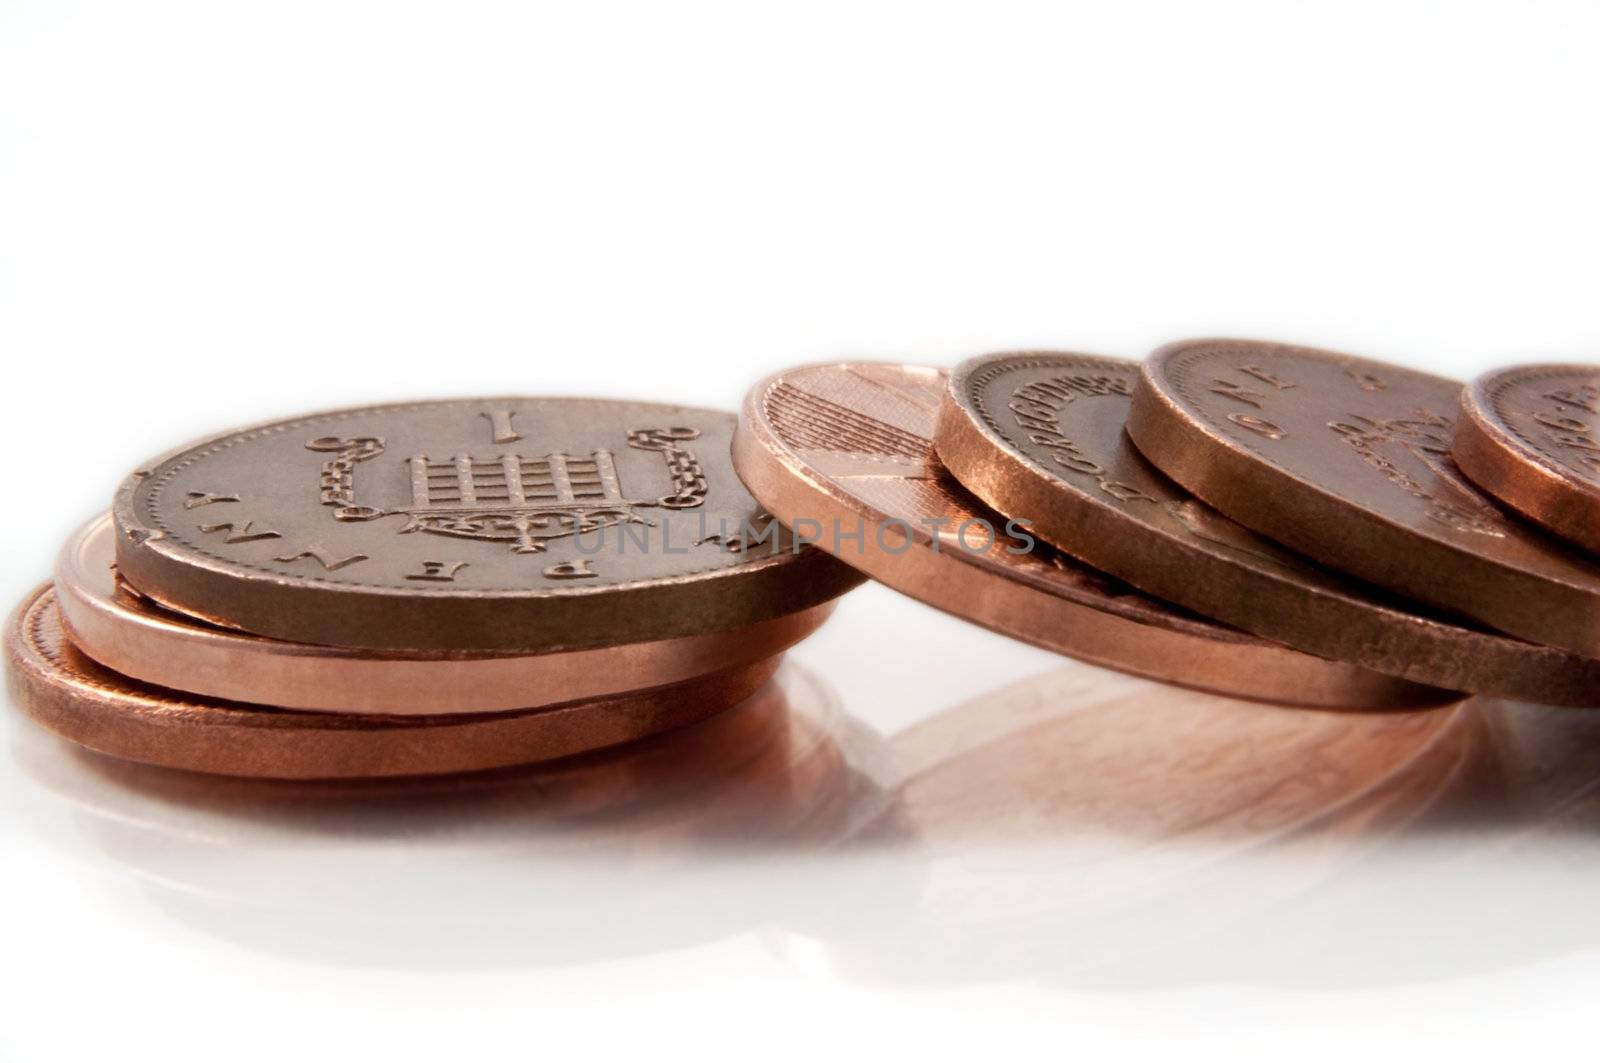 Fallen pennies. by 72soul